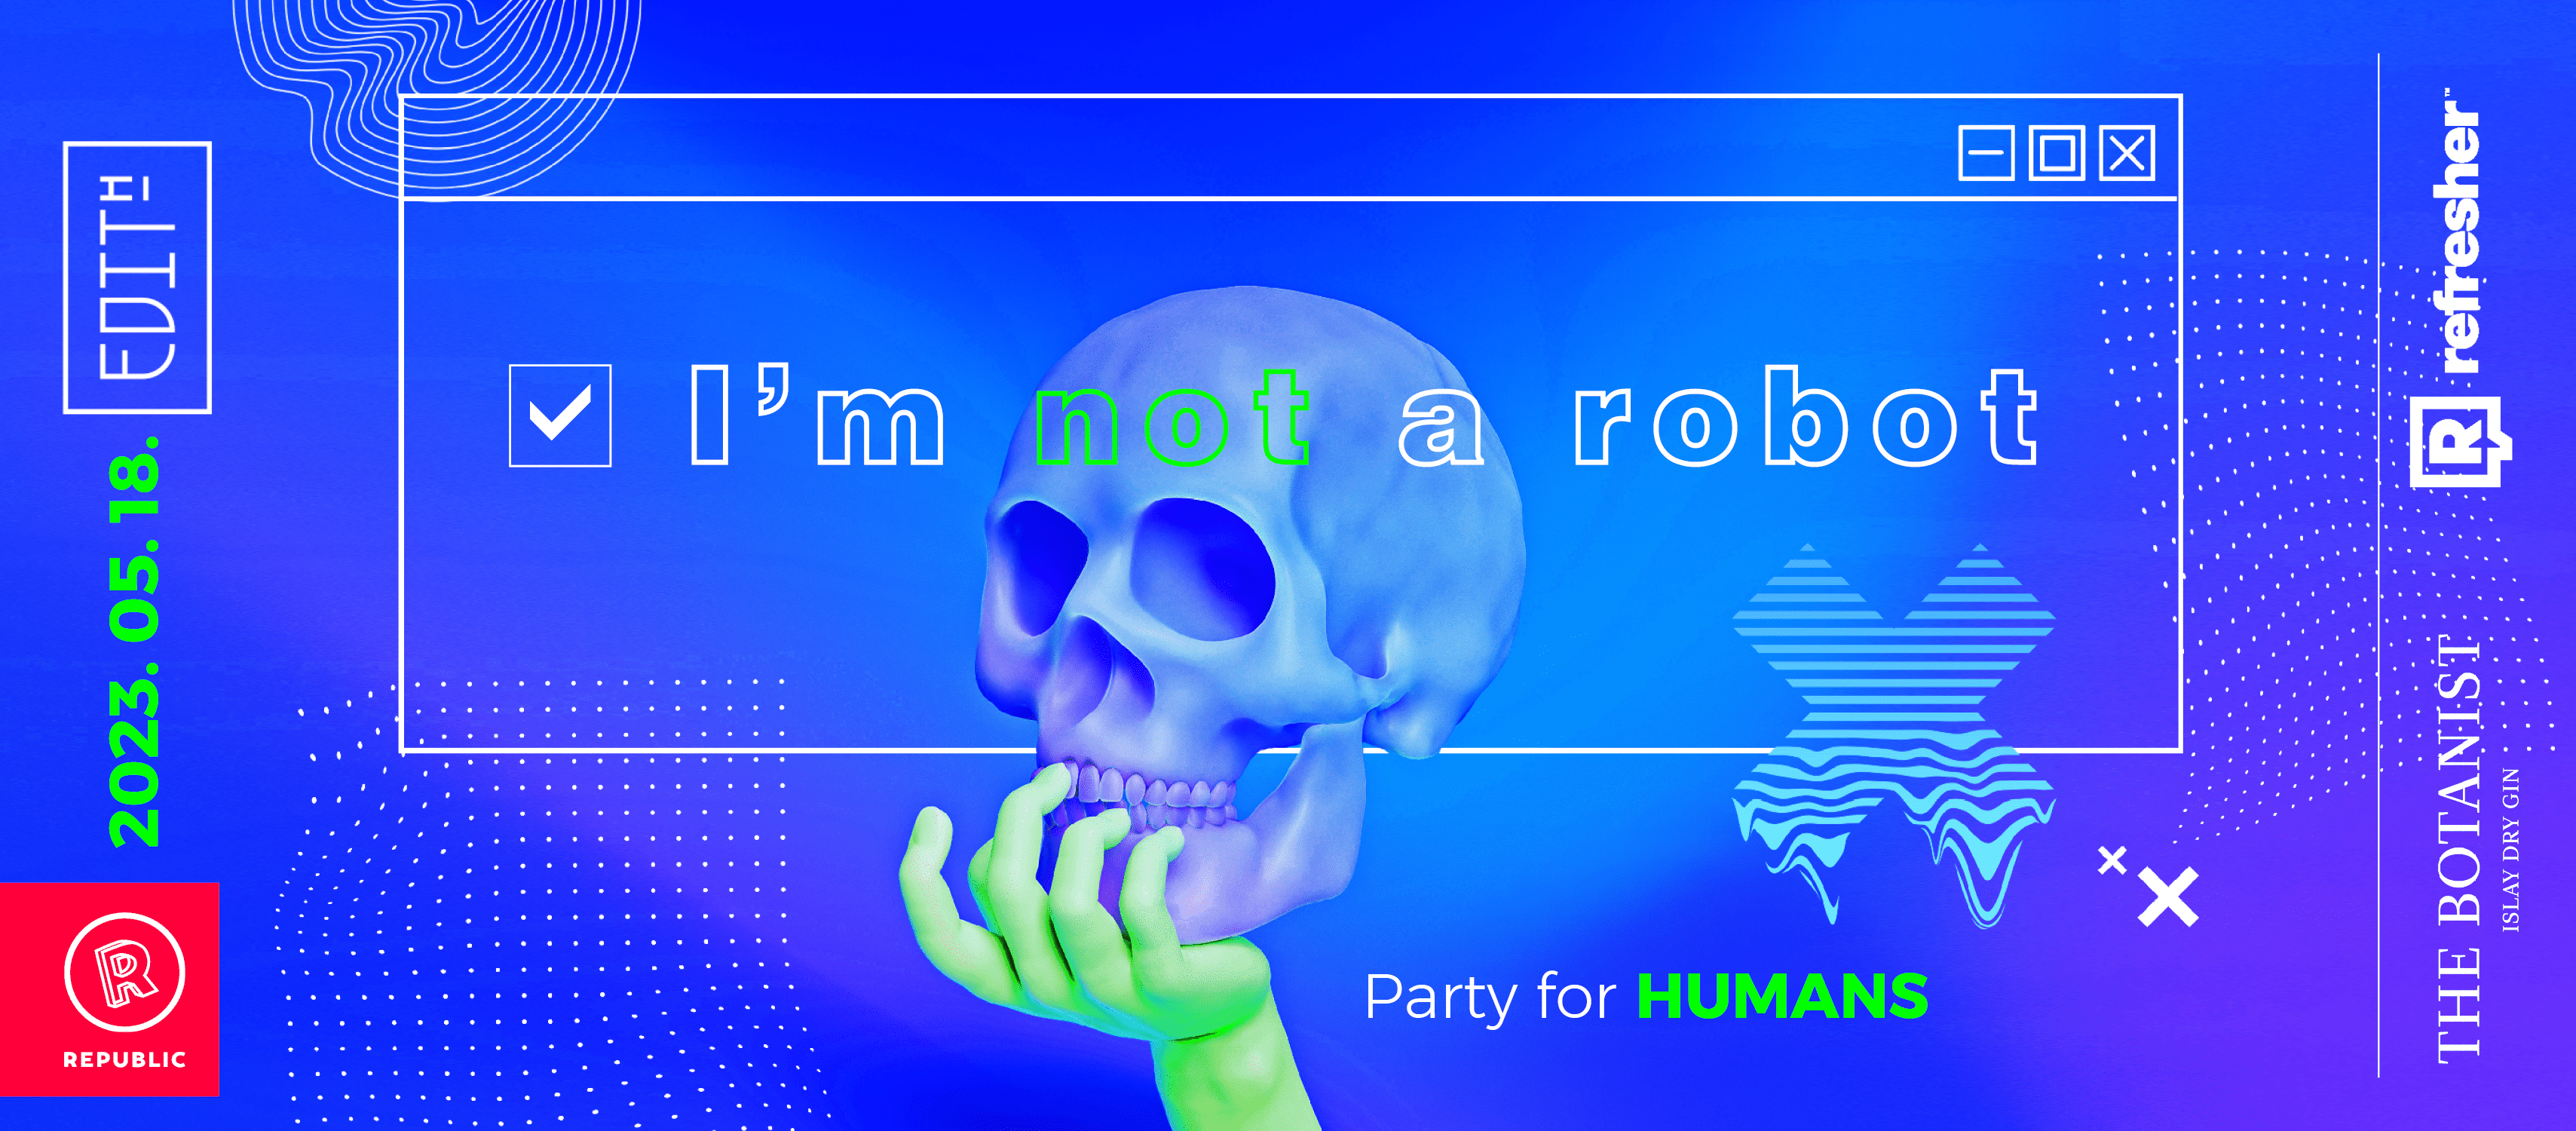 I'M NOT A ROBOT